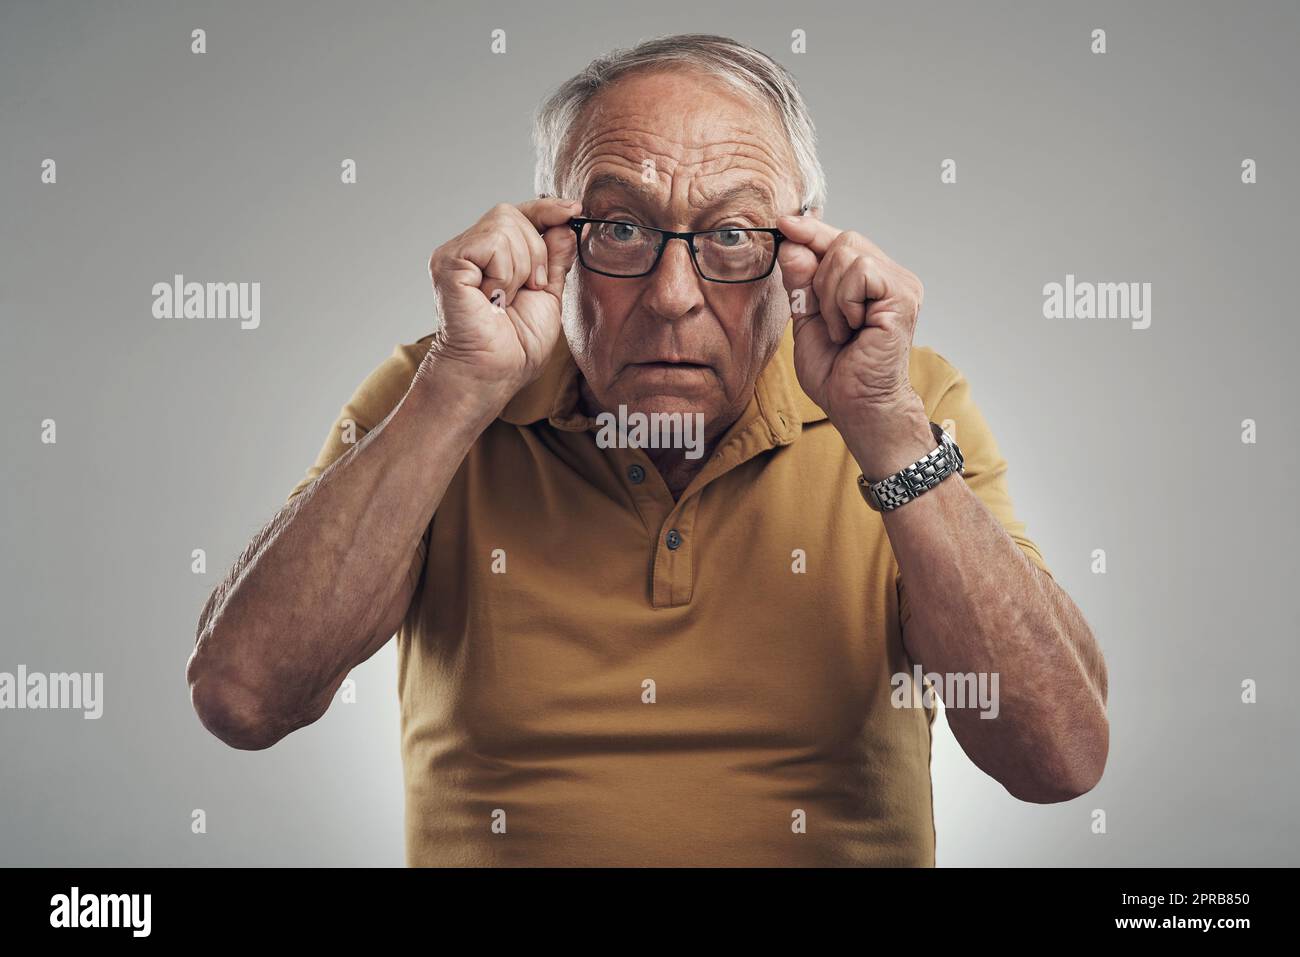 Est-ce un M ou un N. Studio photo d'un homme âgé ajustant ses lunettes sur un fond gris. Banque D'Images